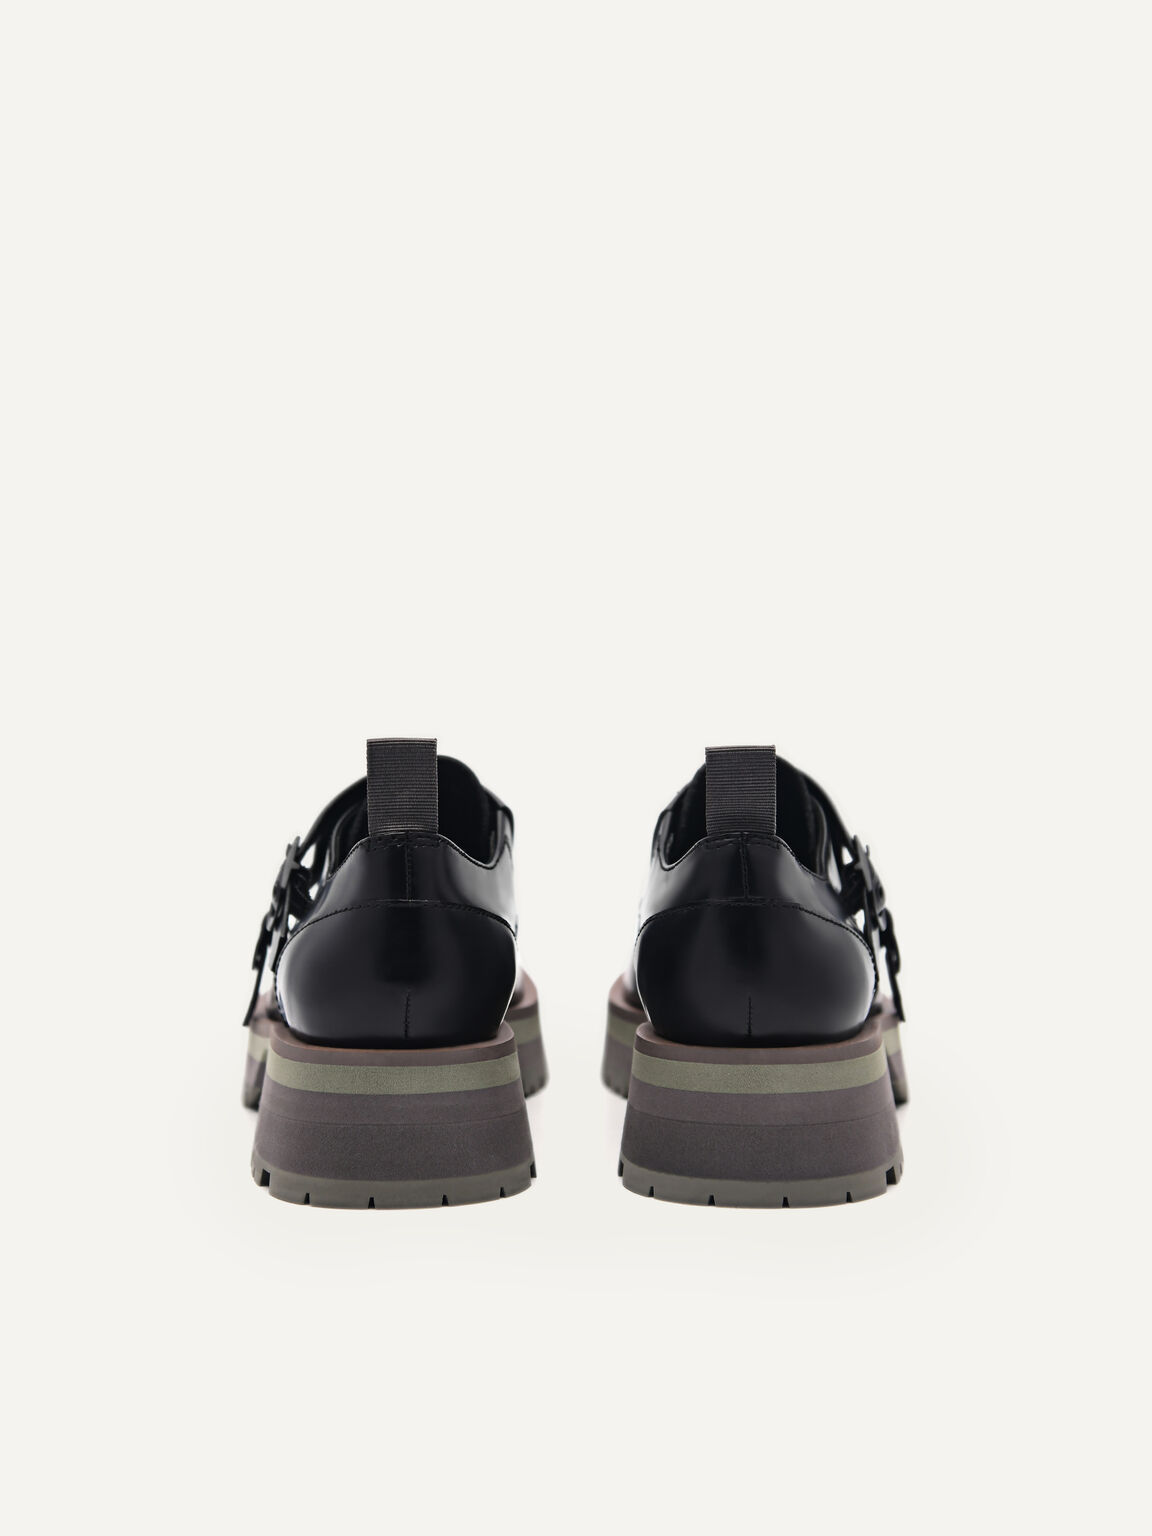 Leather Double Monkstrap Shoes, Black